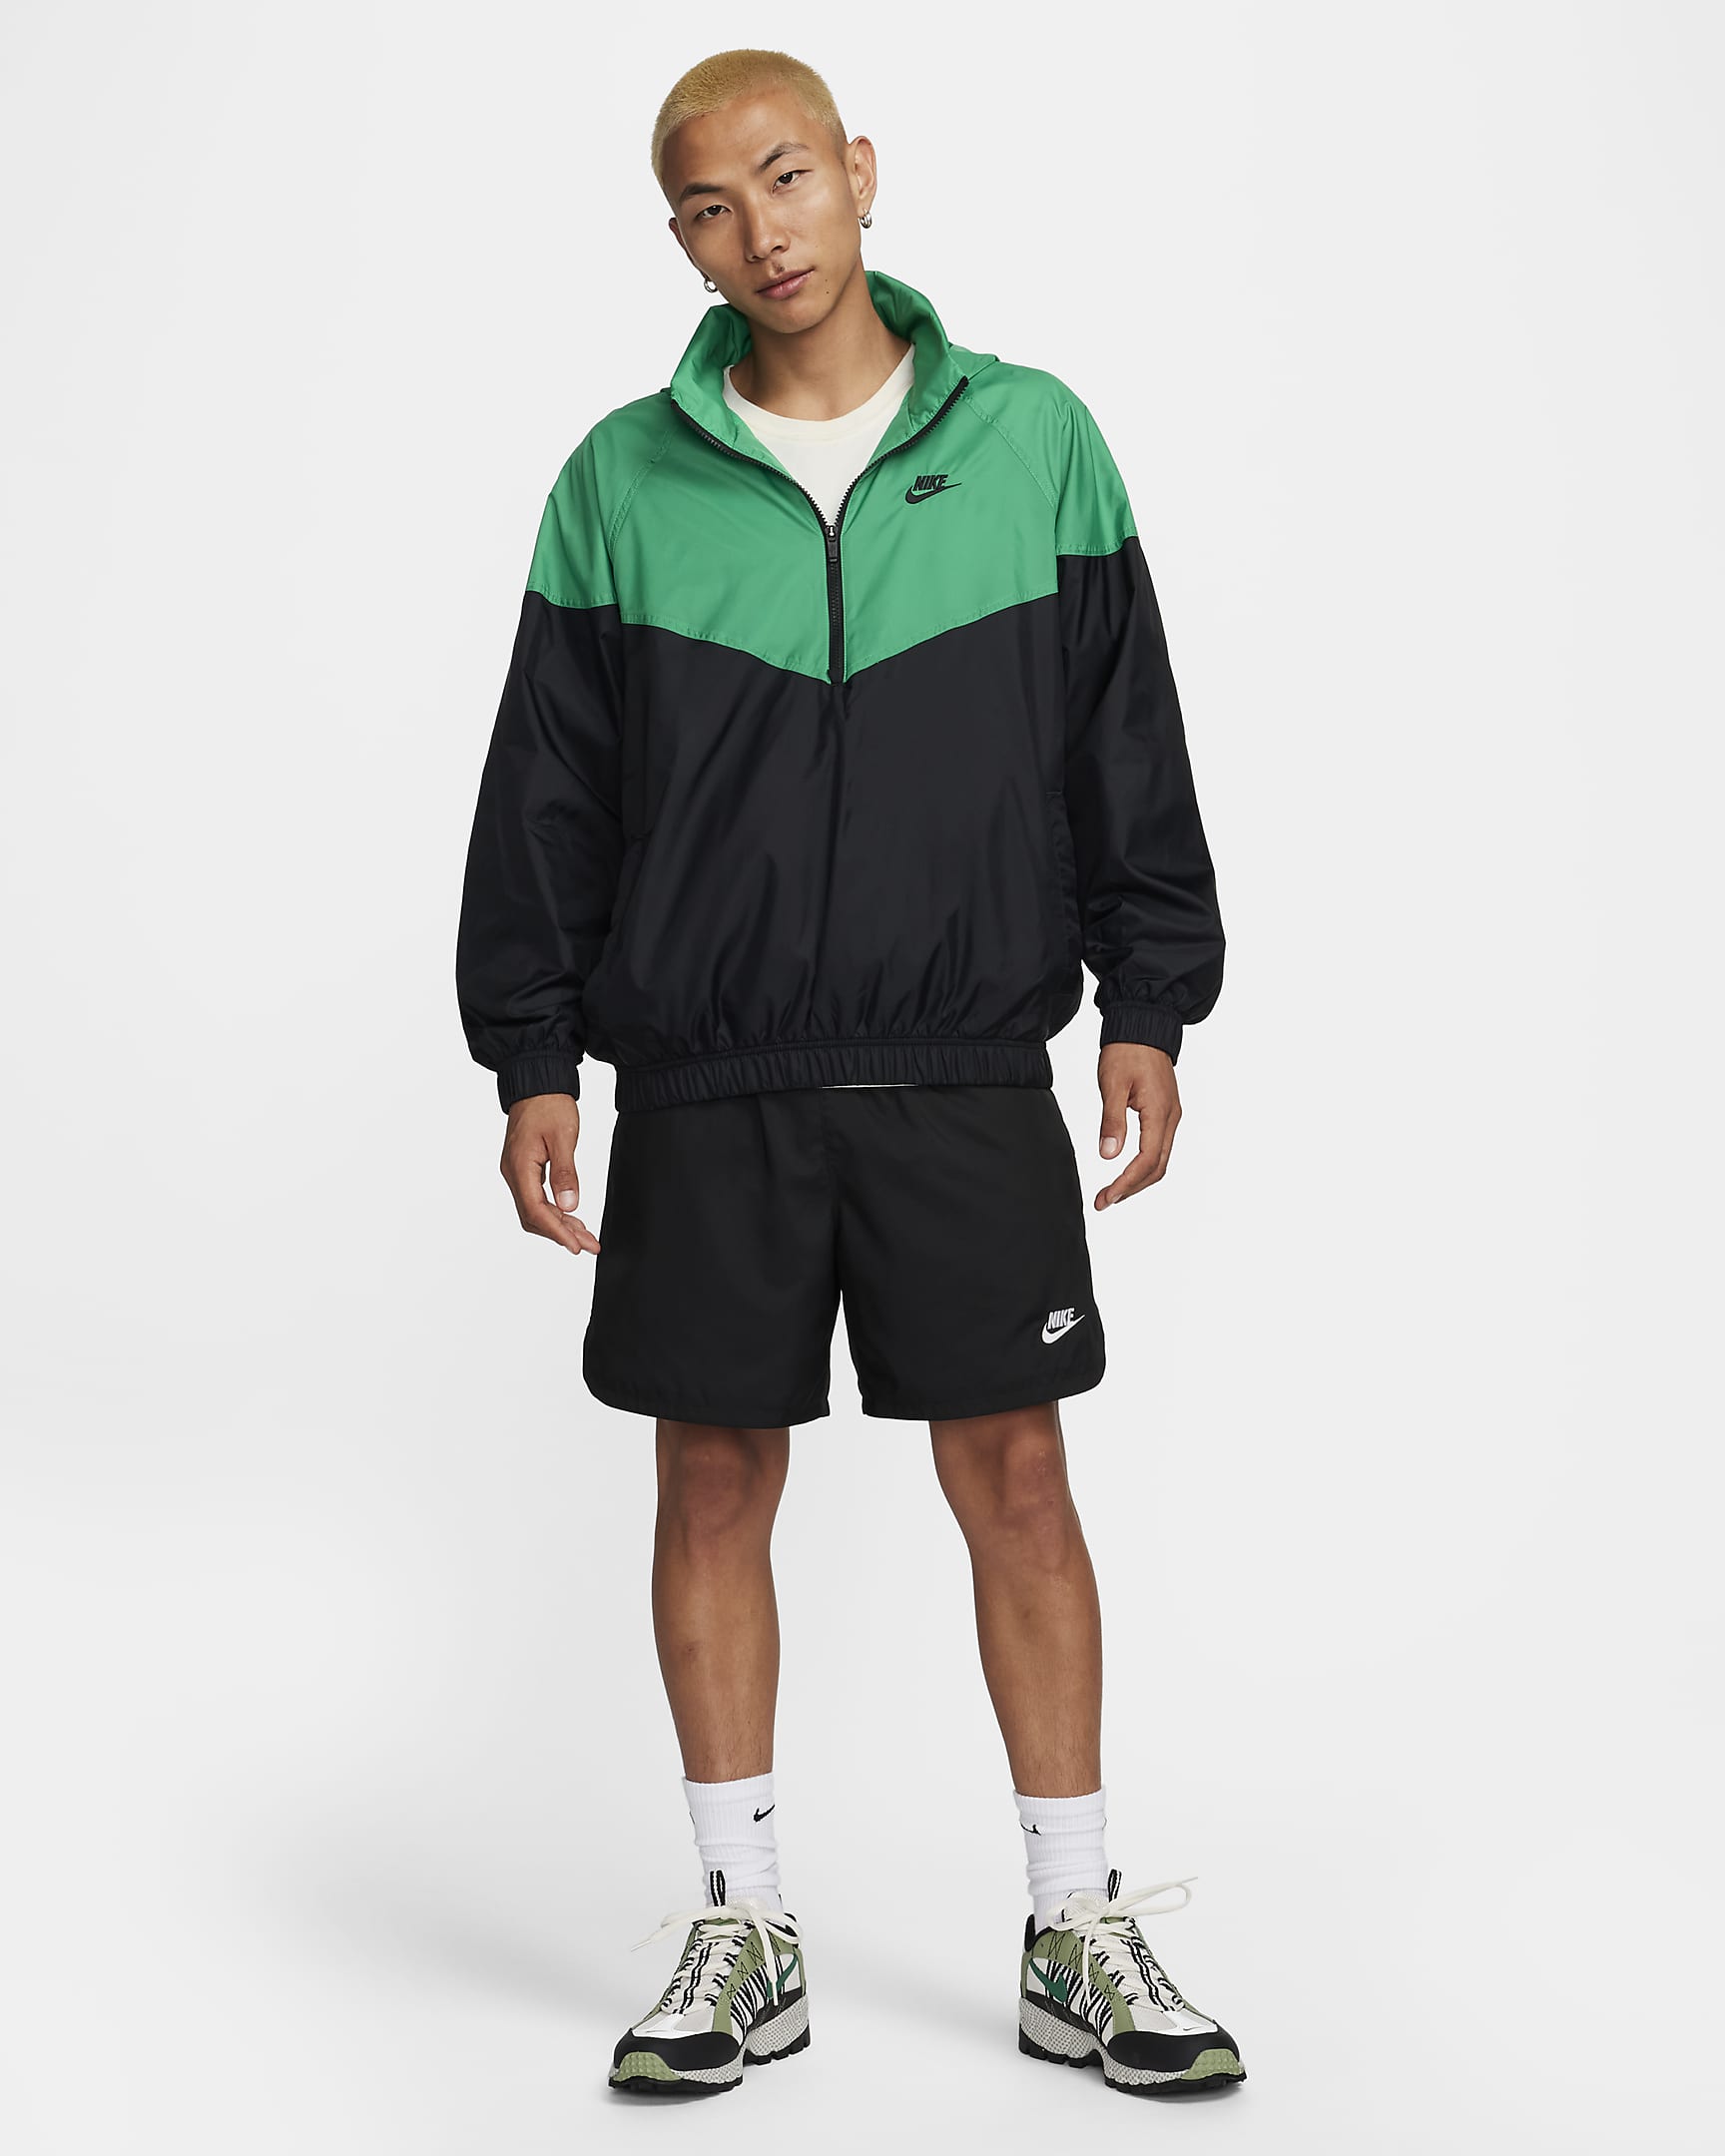 Nike Windrunner Men's Anorak Jacket. Nike.com